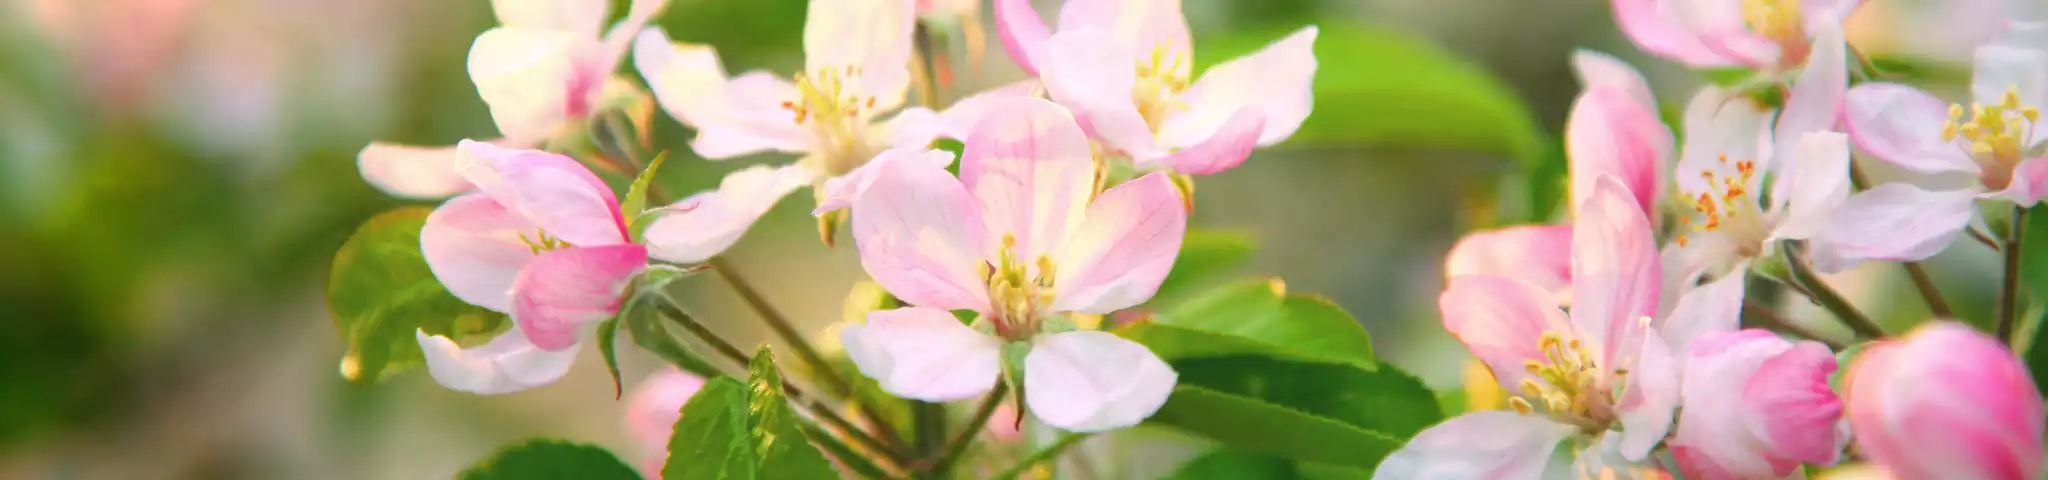 Apple Flower